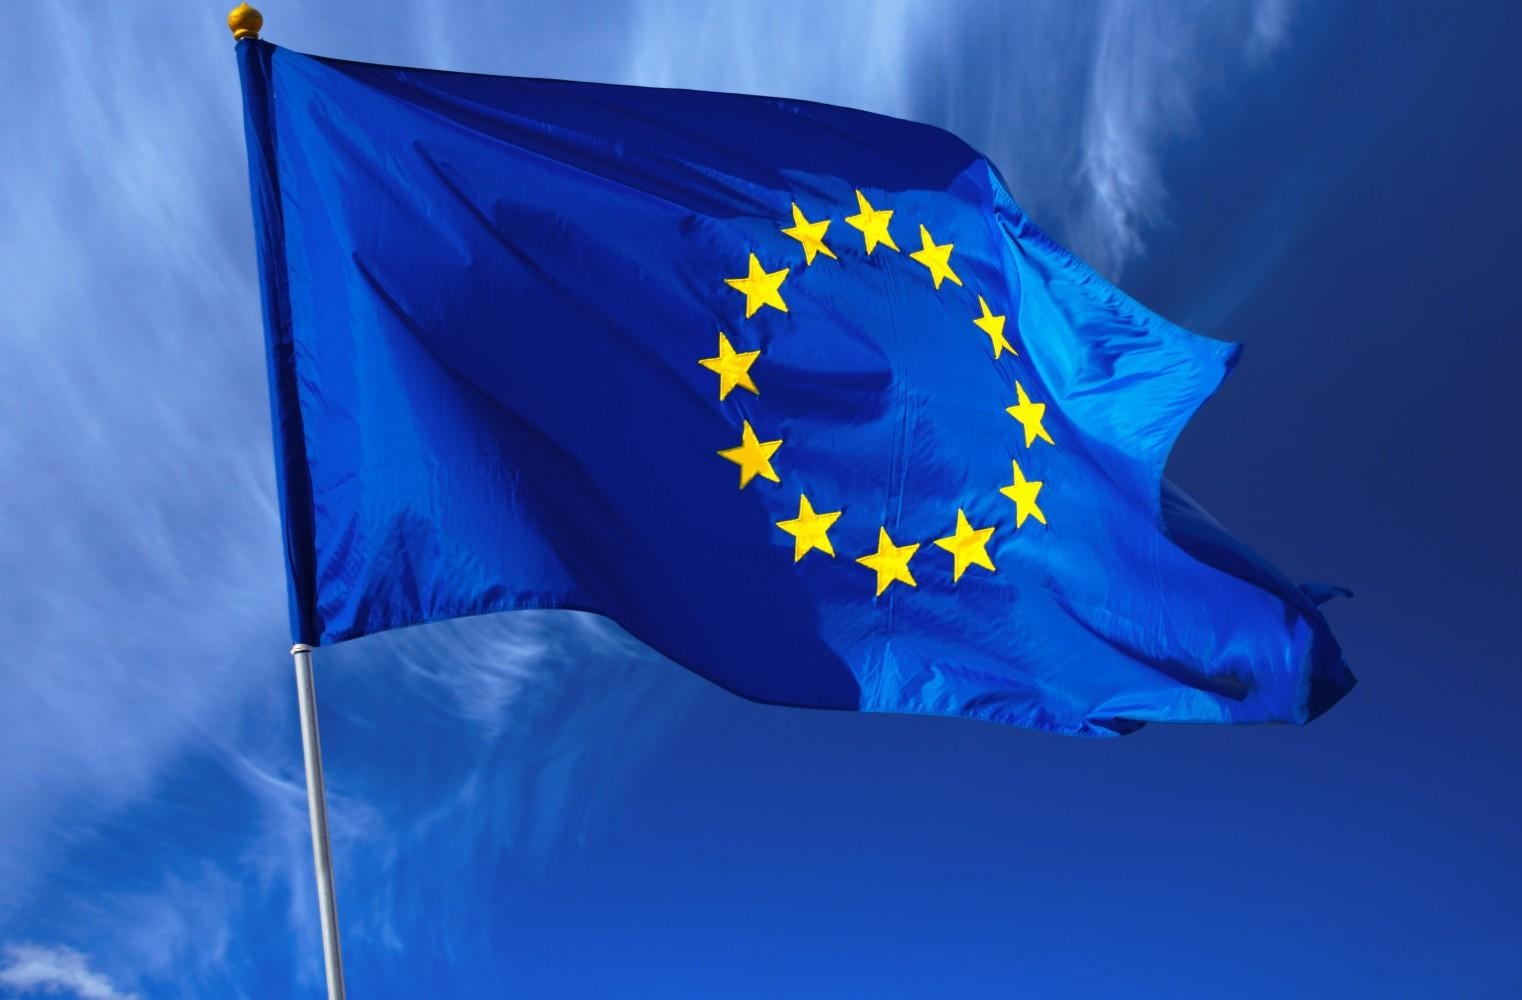 دول الاتحاد الأوروبي تتفق على تغيير نظام التأشيرات "شينغن" إلى الرقمية.